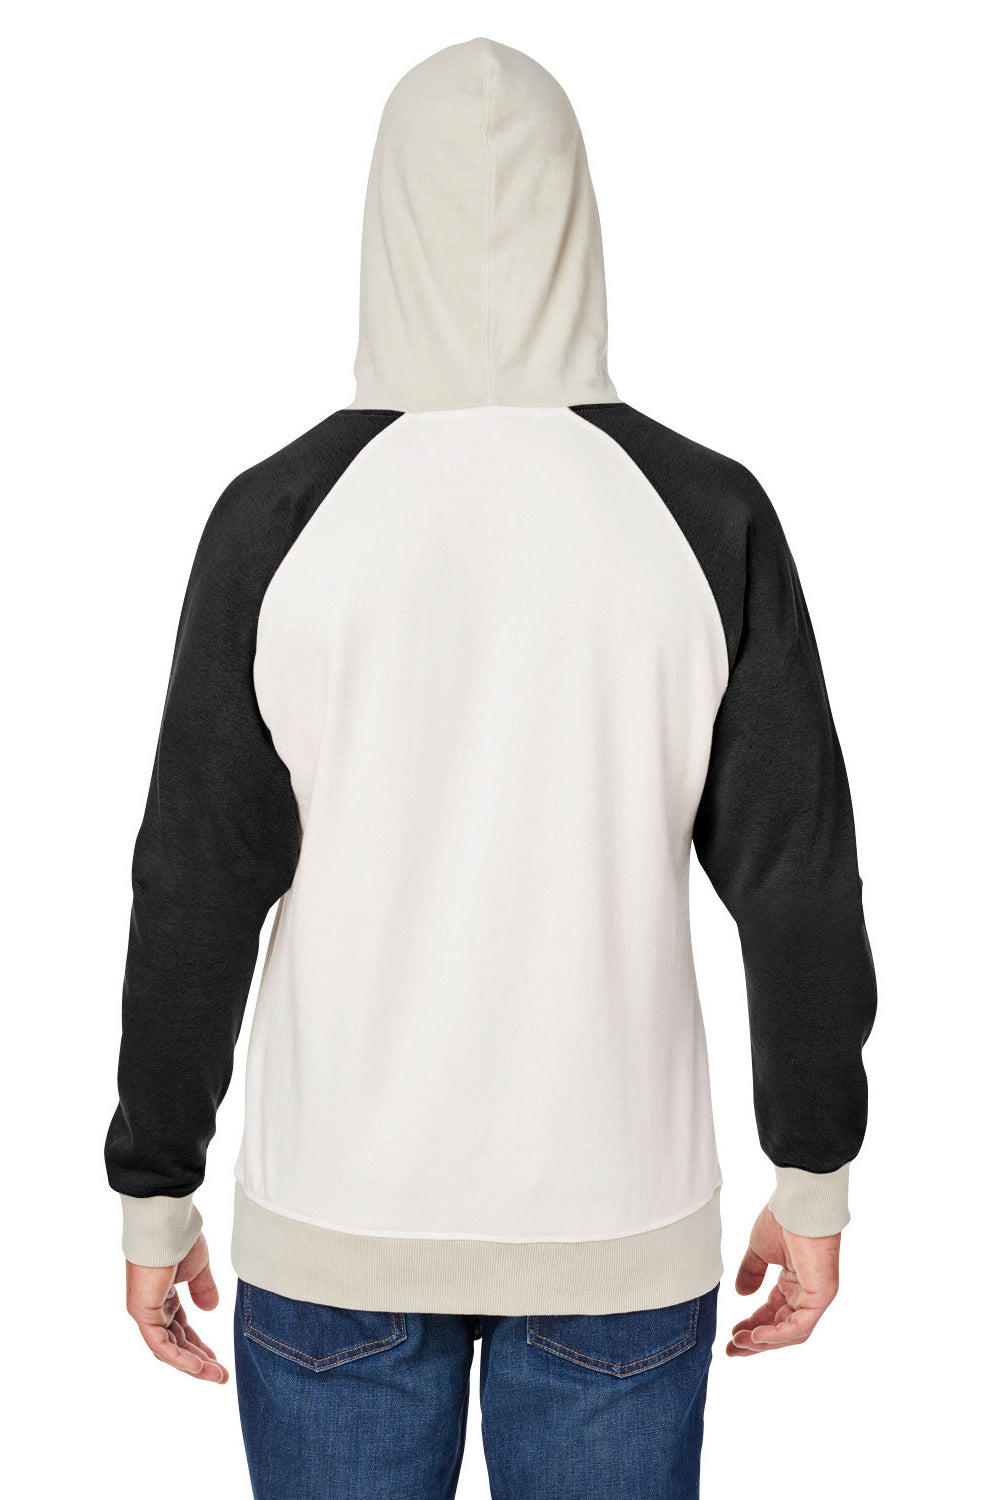 J America 8886JA Mens Vintage Hooded Sweatshirt Hoodie Antique White/Black Back